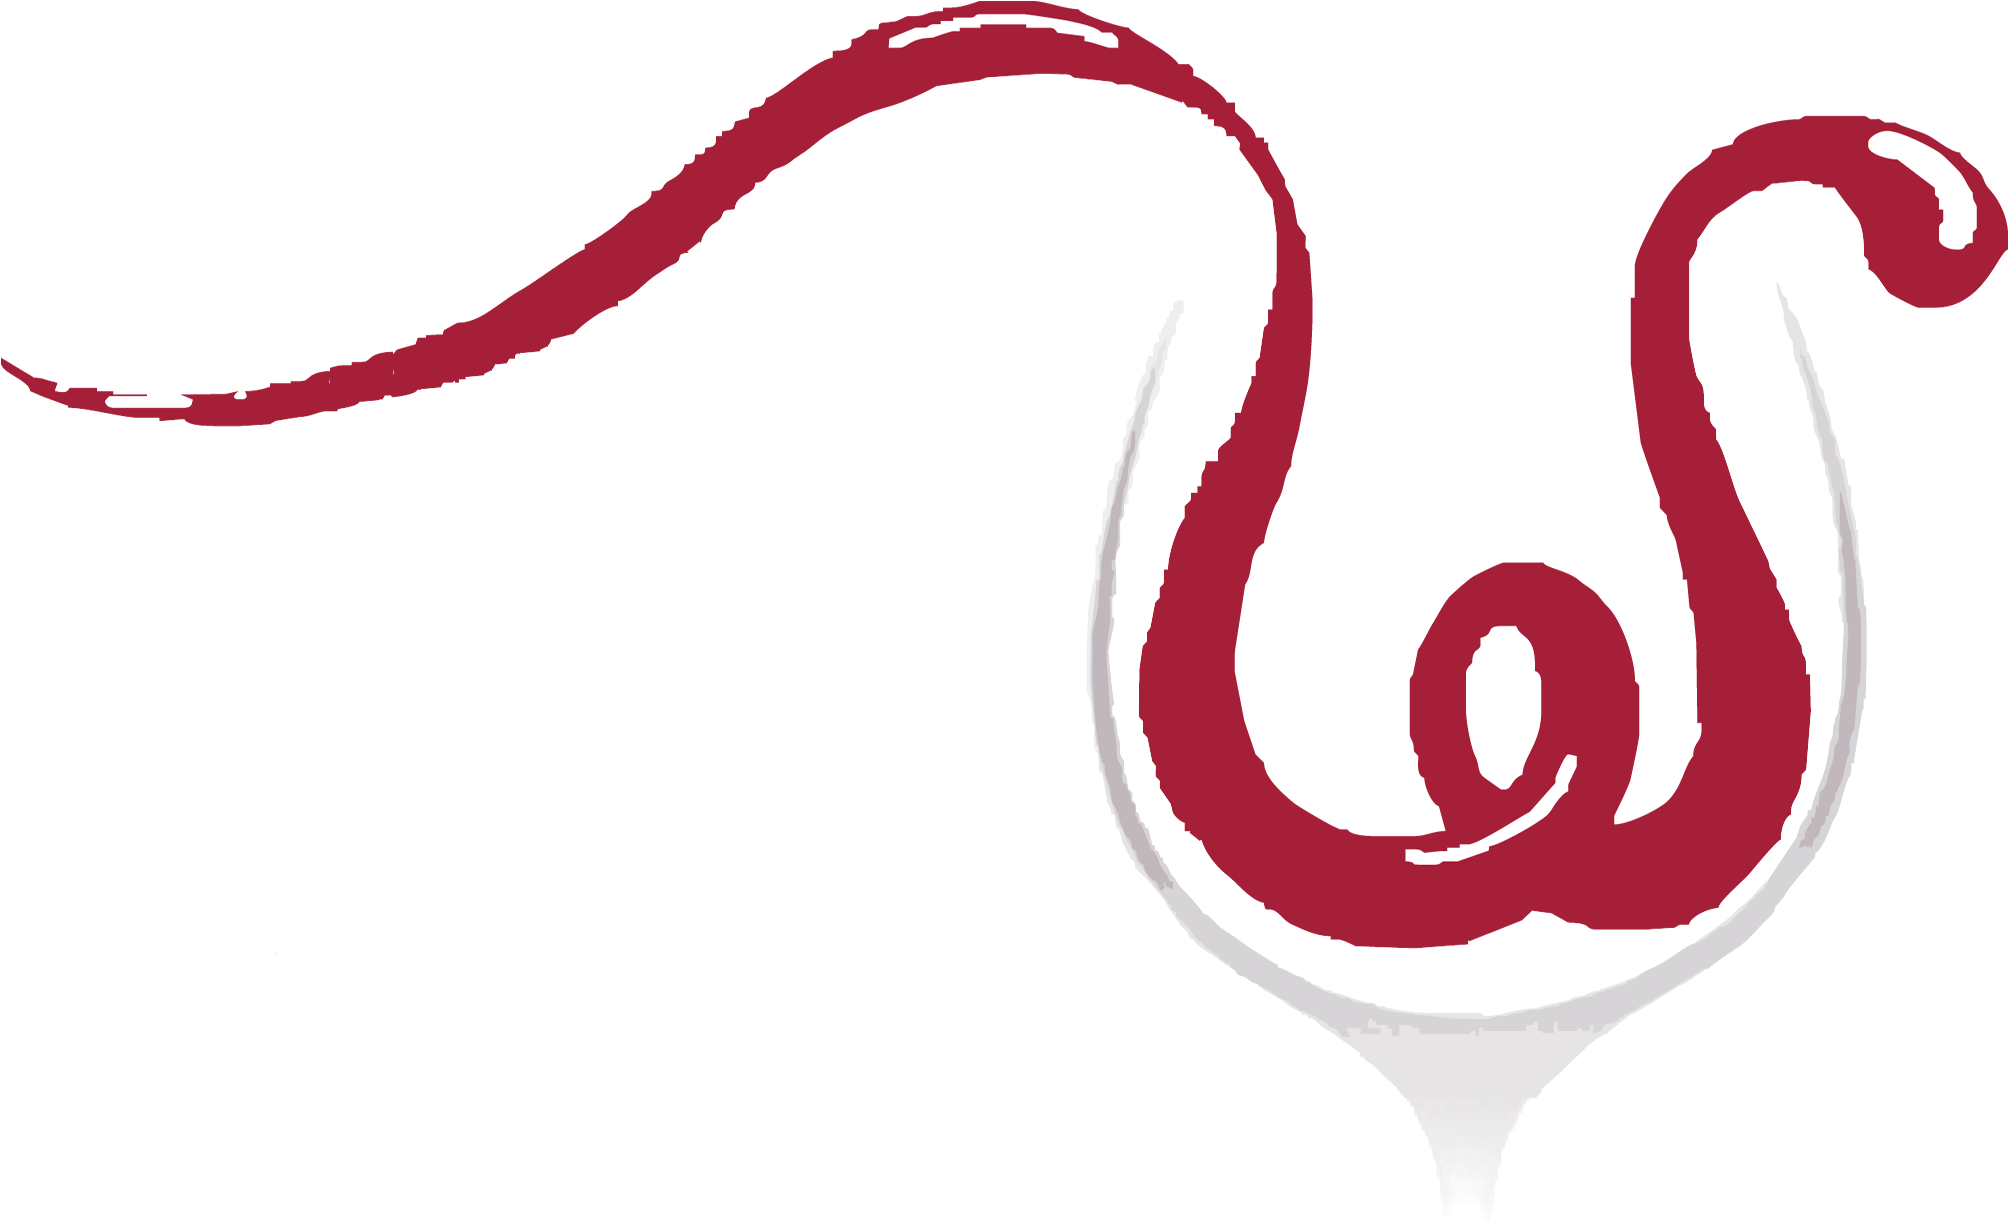 Mckinney's Ww Logo, Mckinney's Wine - Mckinney's Ww Logo, Mckinney's Wine (2011x1238)